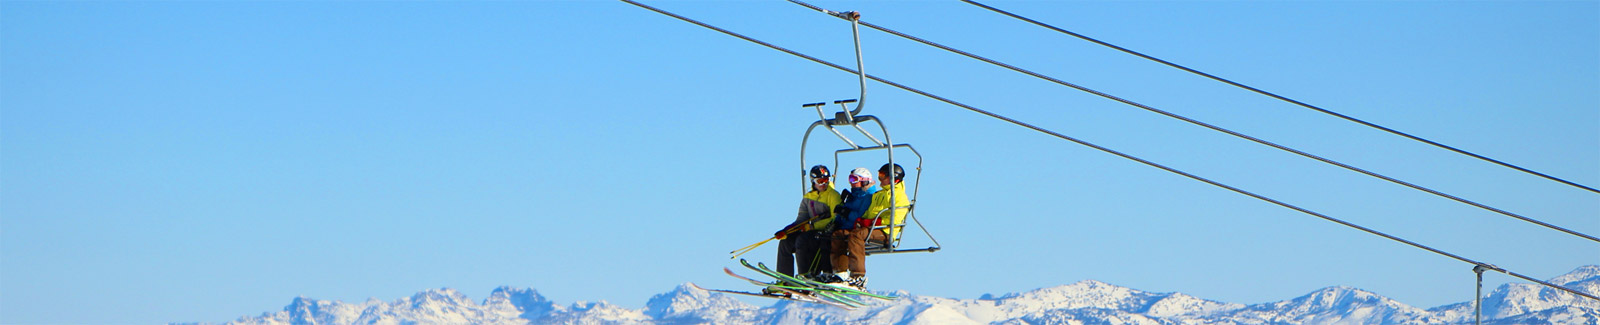 Best idaho Ski Resort Town